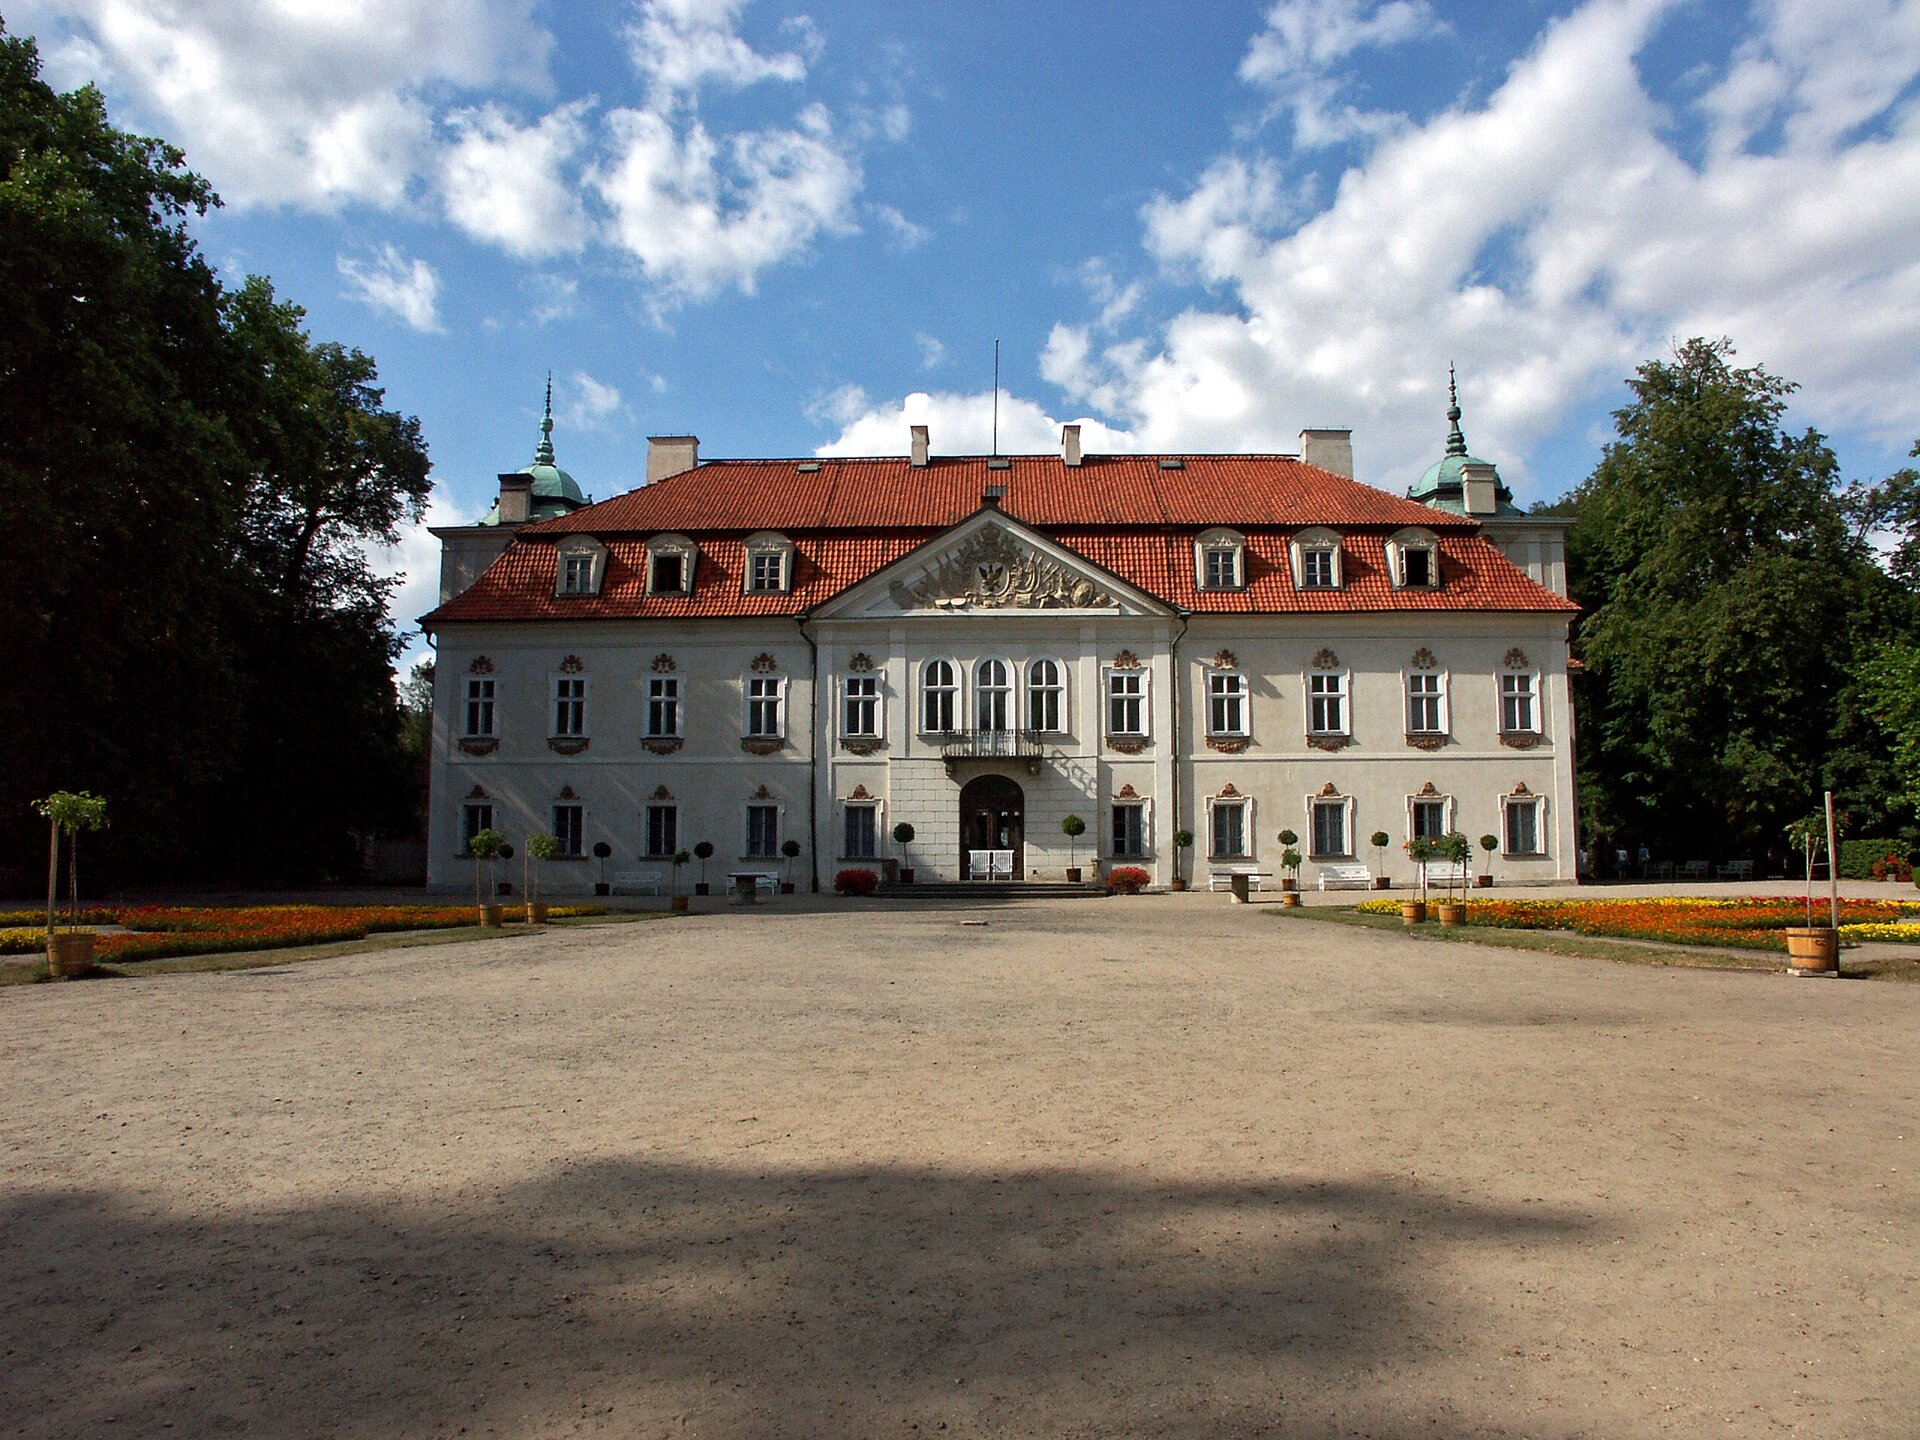 Pałac w Nieborowie Pałac w Nieborowie Źródło: Dariusz Cierpiał, Wikimedia Commons, licencja: CC BY-SA 3.0.